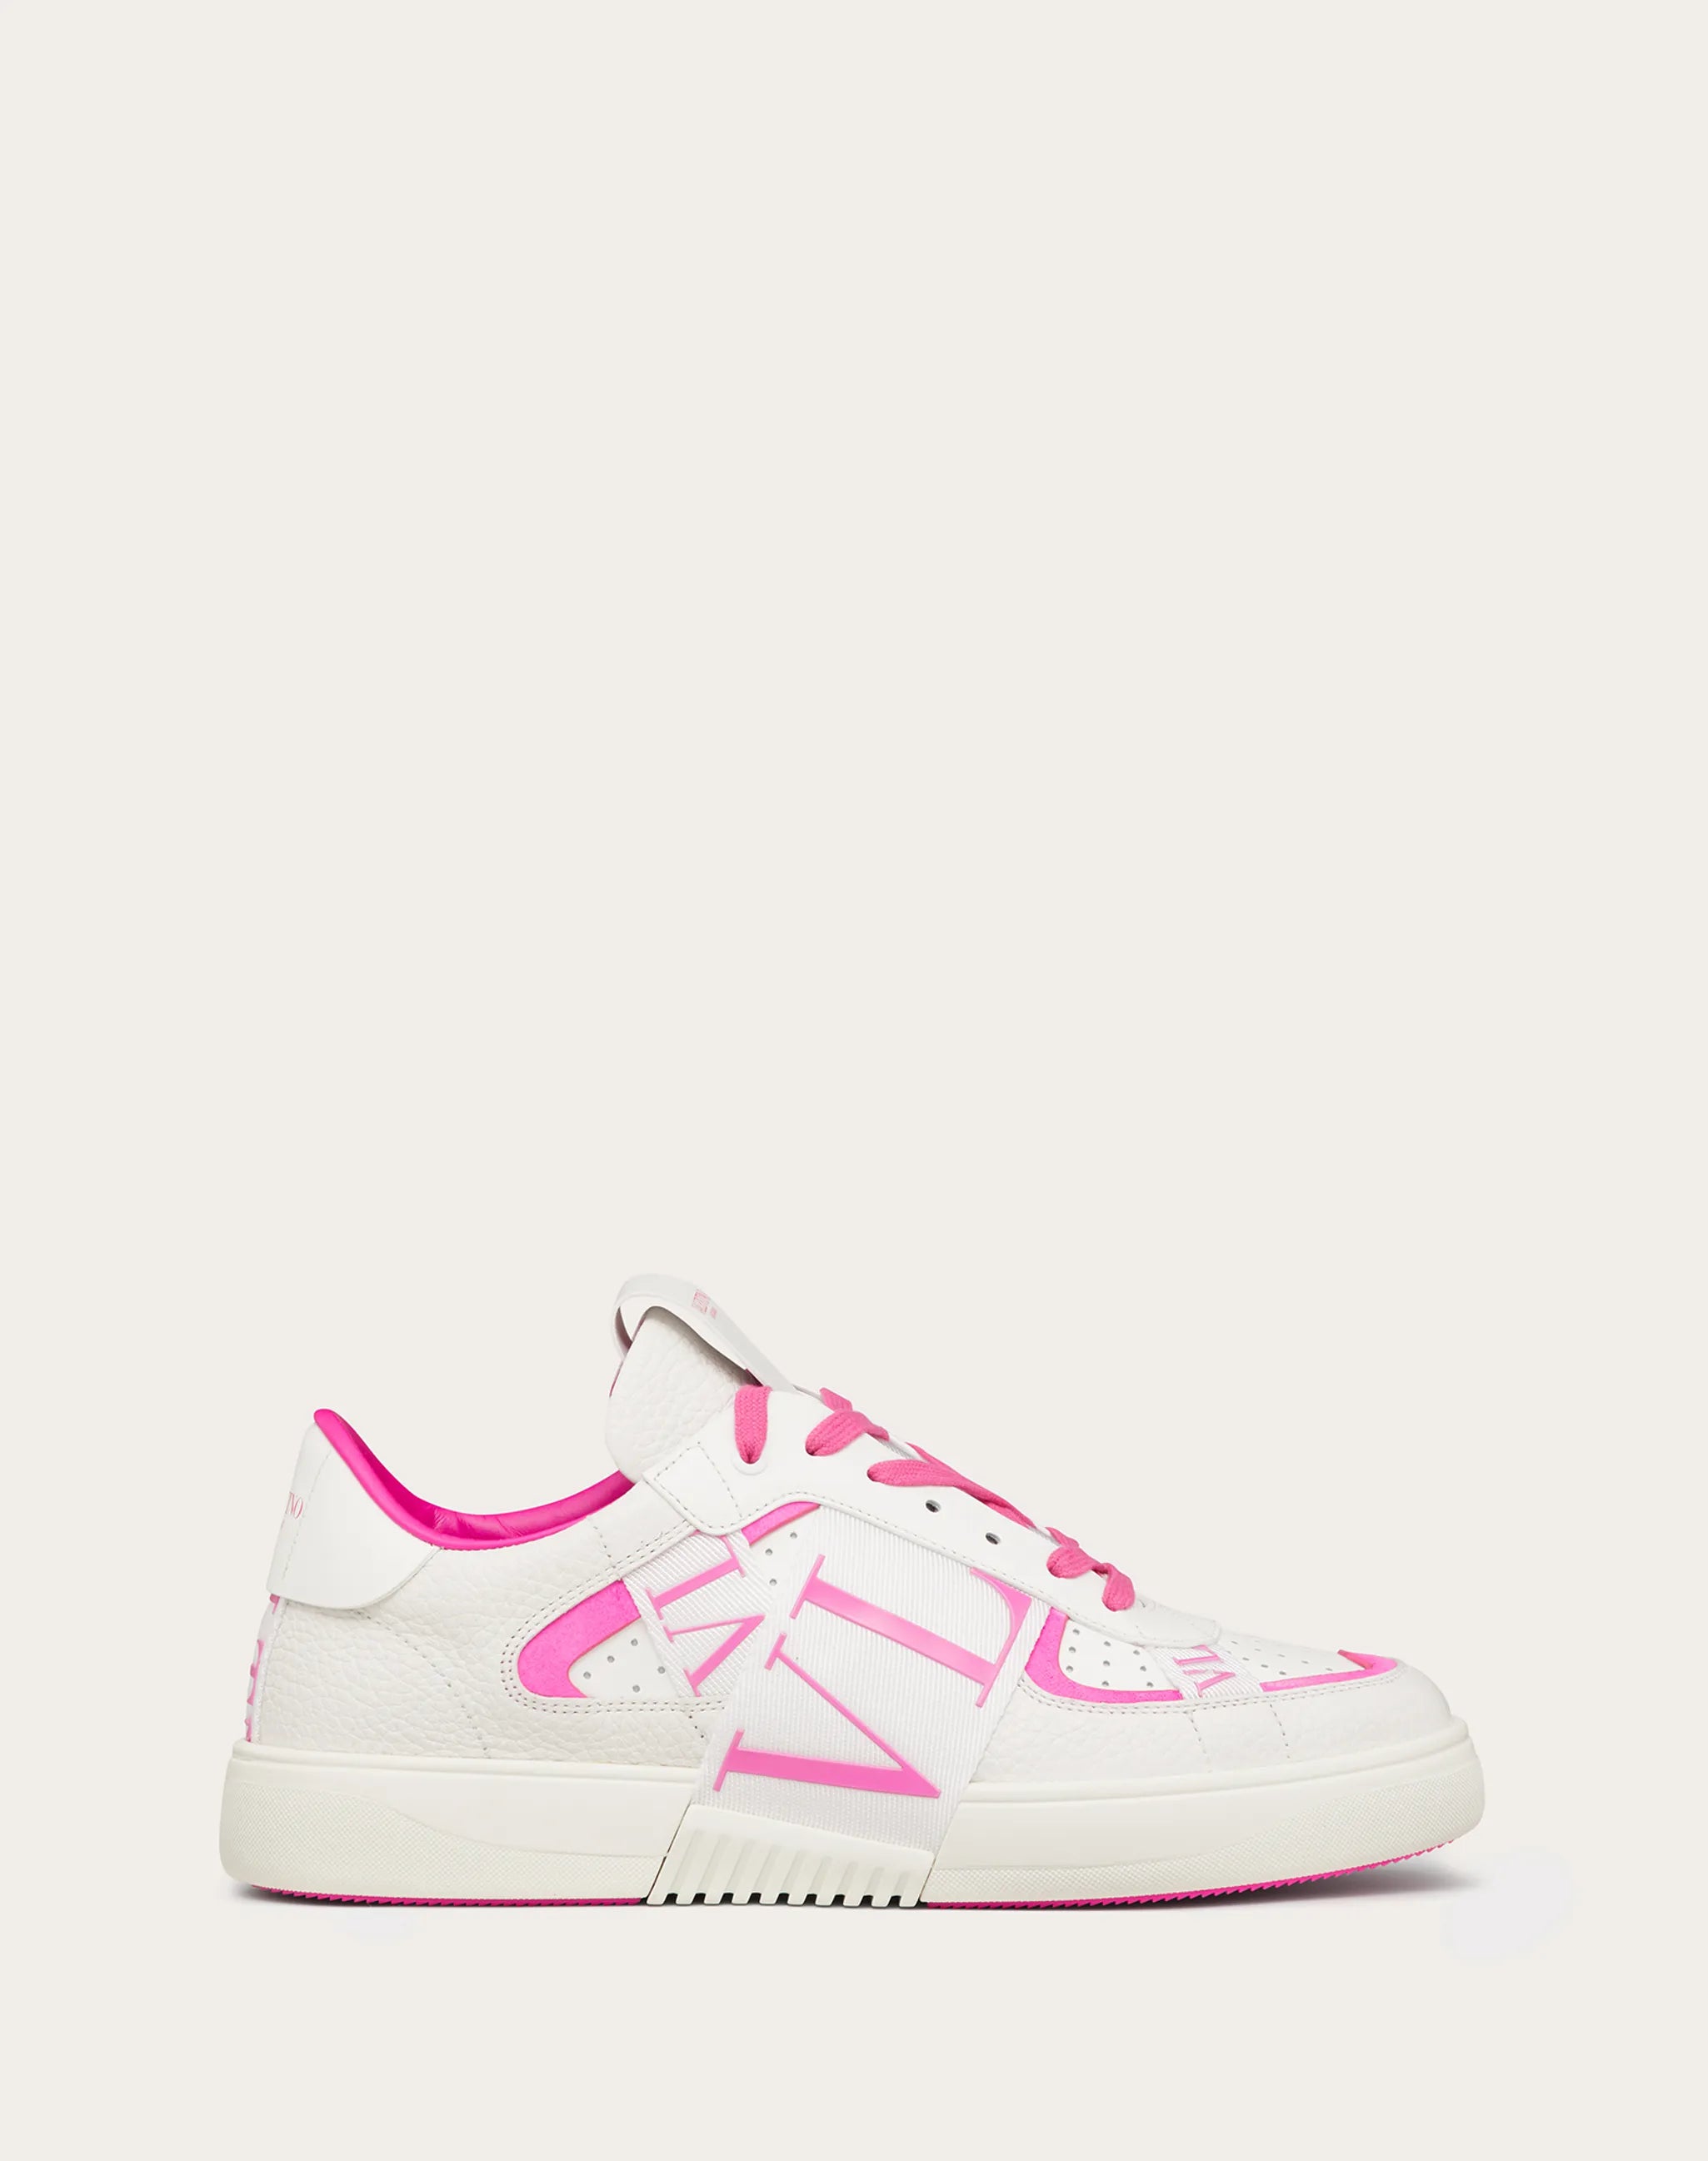 Valentino Garavani Valentino Garavani Shoes White/Pink PP